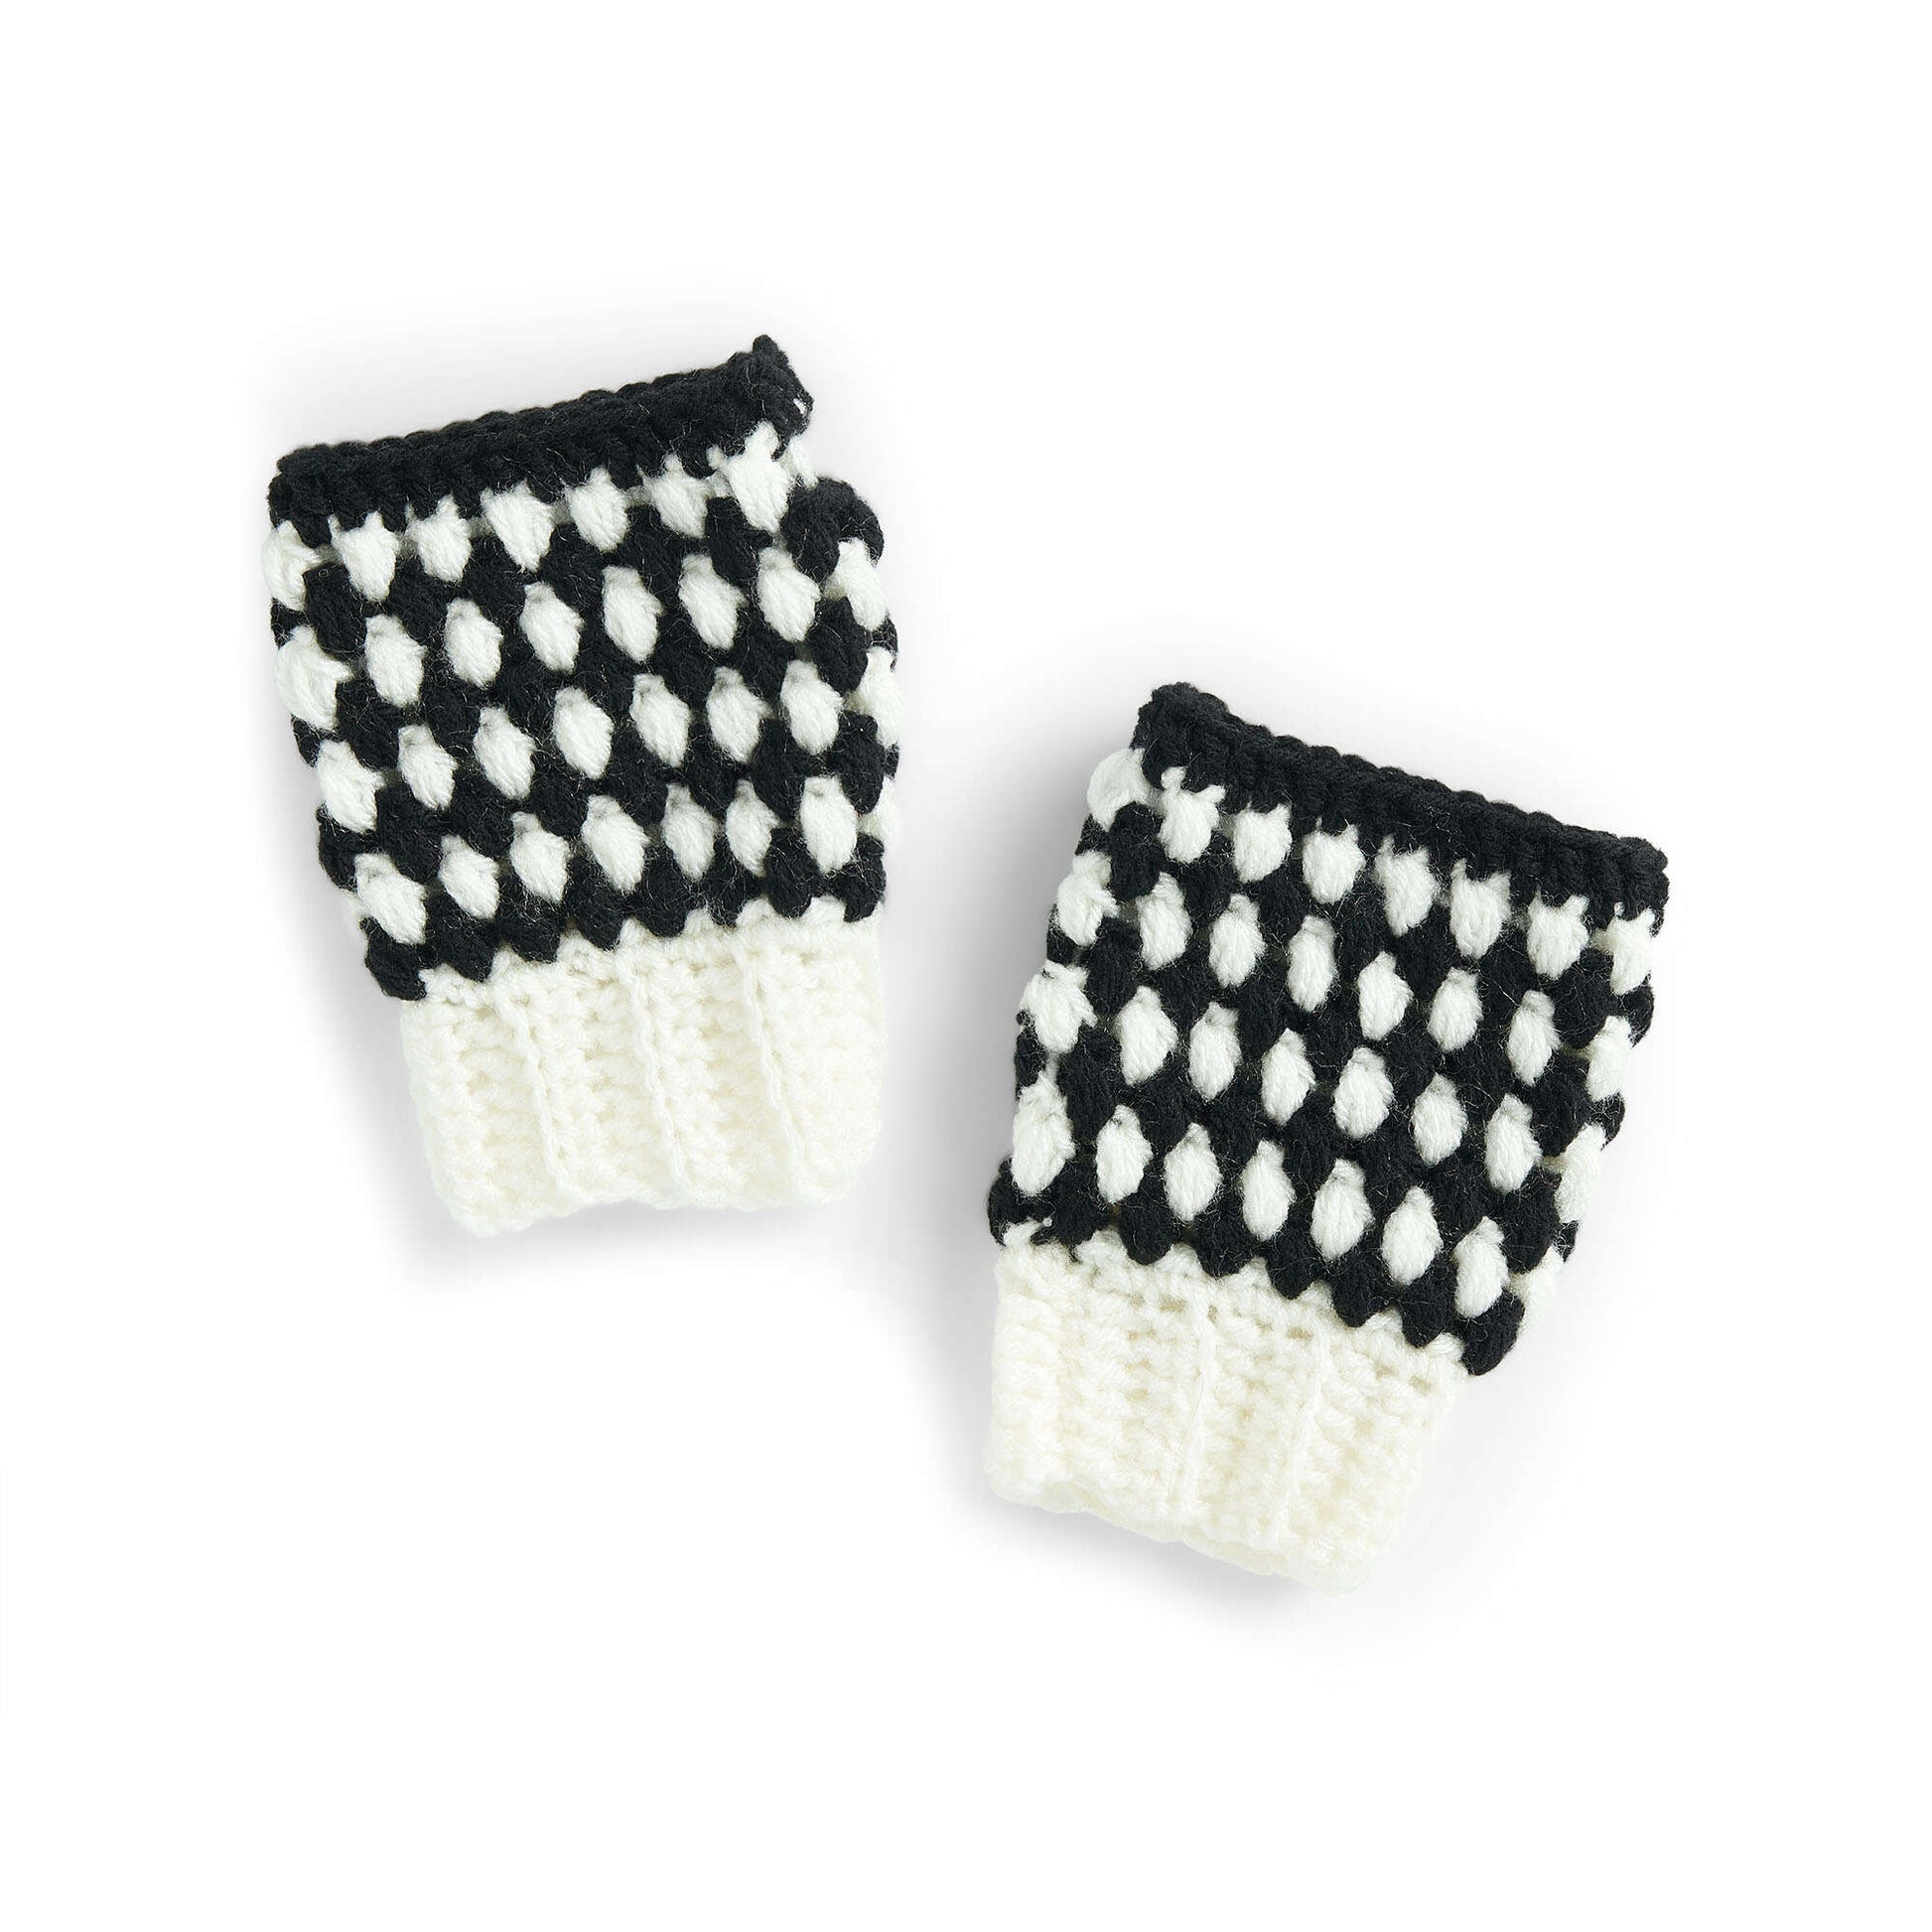 Red Heart Fingerless Crochet Gloves Single Size